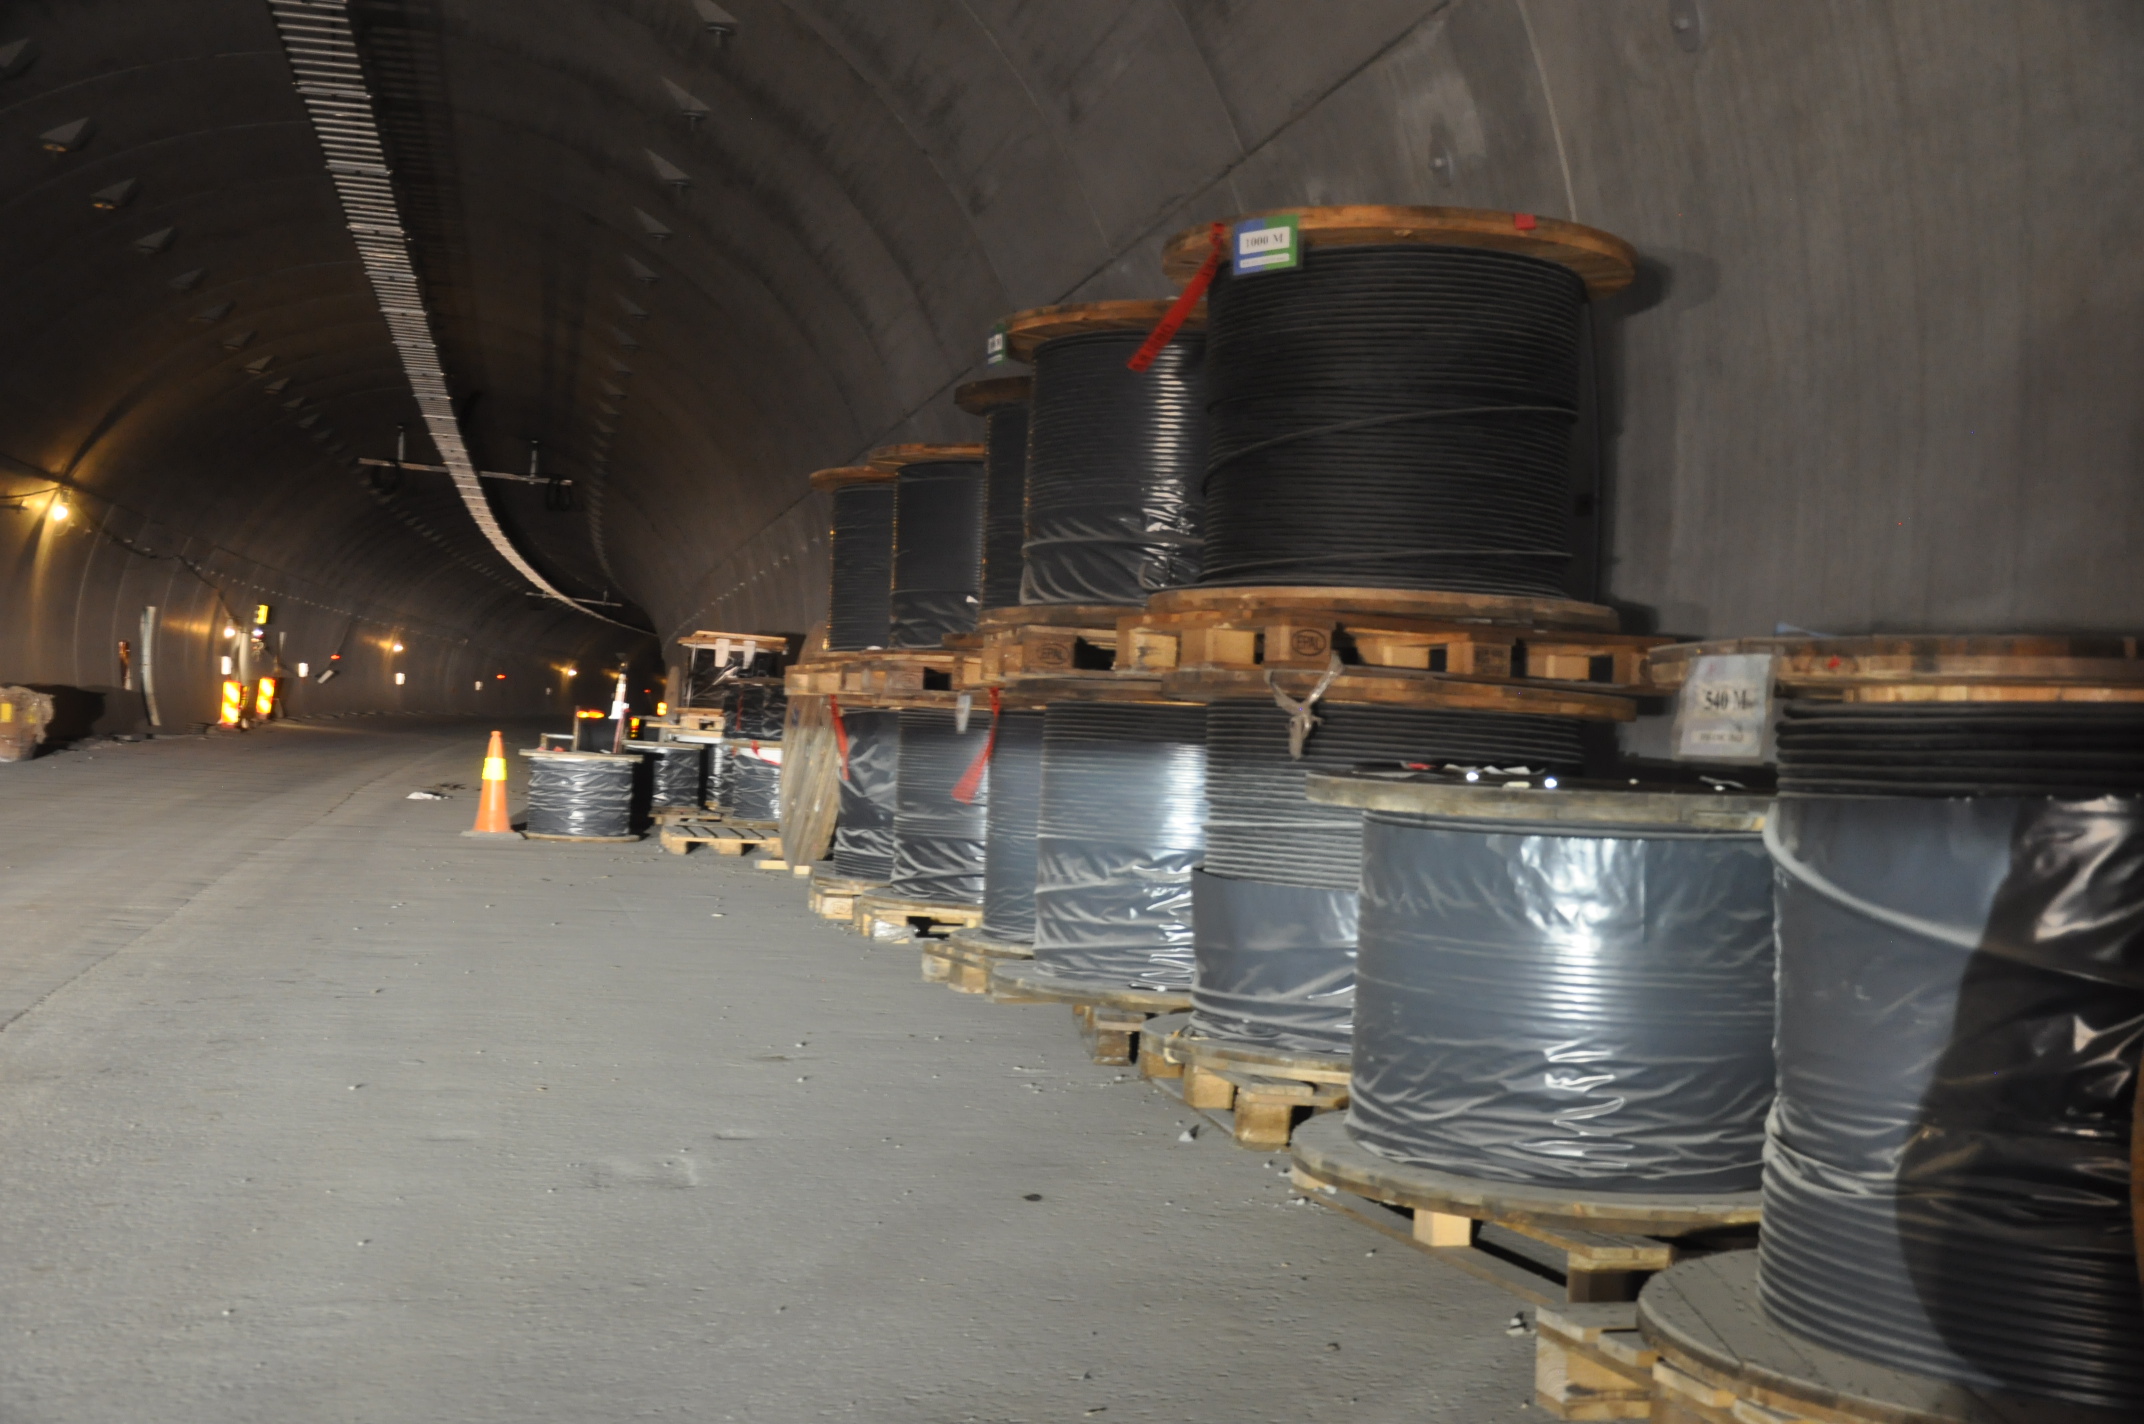 Kilometervis med kabler skal sørge for strømforsyning til tunnelene. (Foto: Kjell Wold)